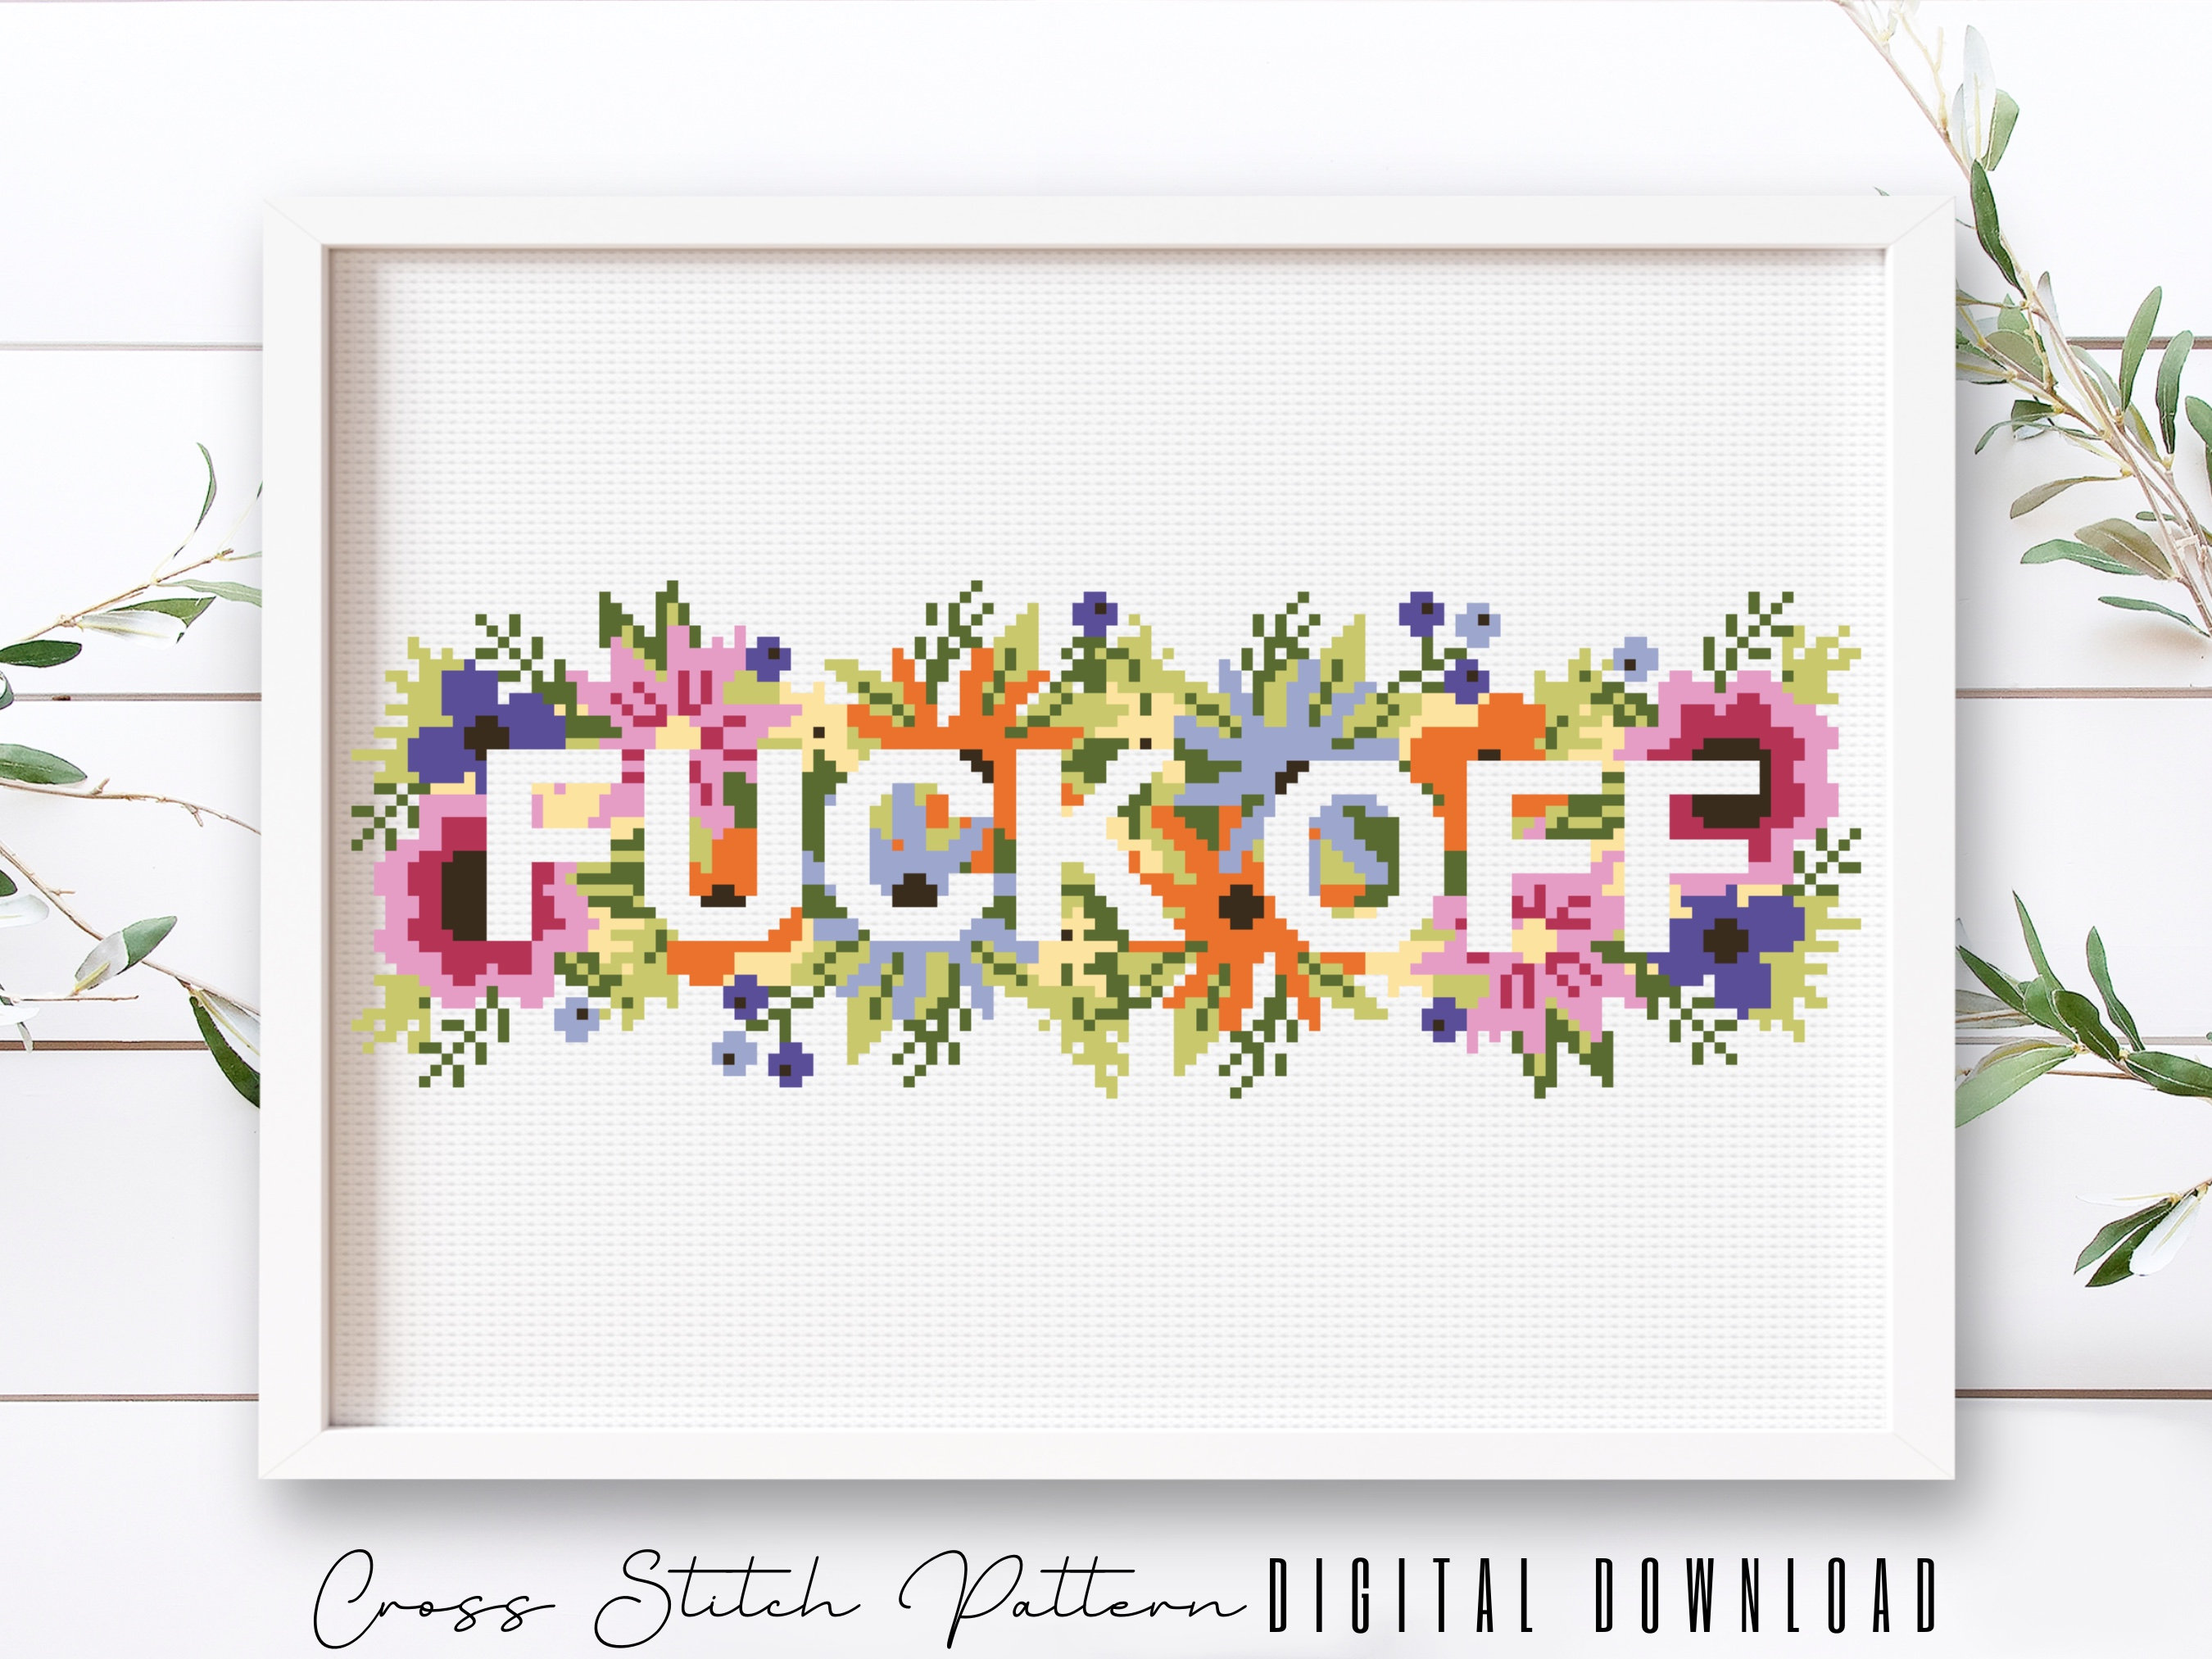 Cunt - naughty vulgar cross stitch crossstitch – Gypsy Rose Handmade